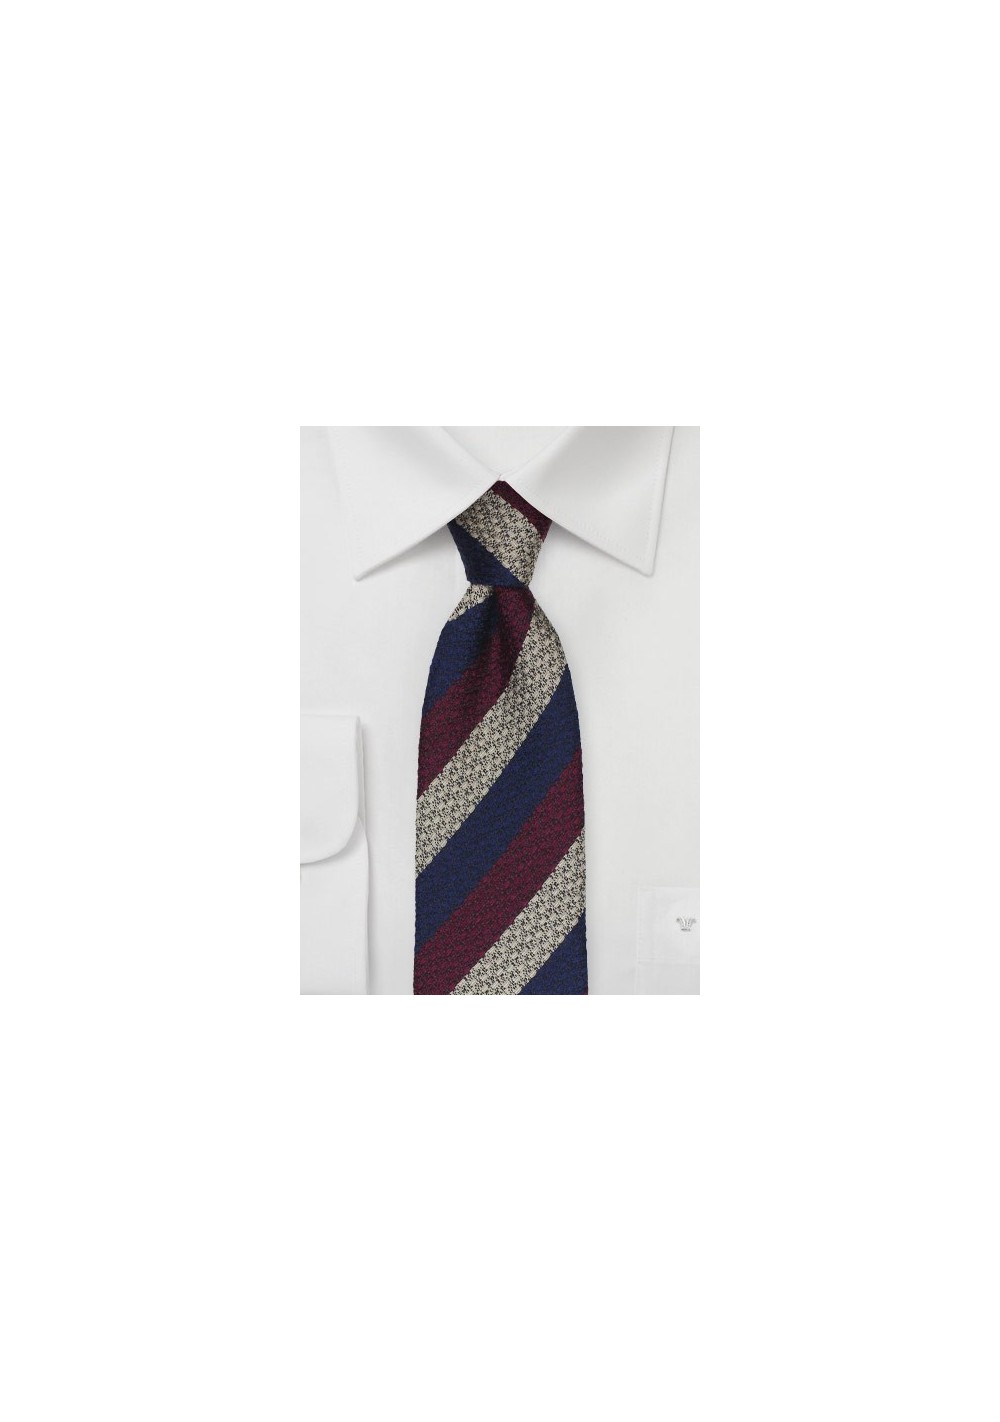 Textured Skinny Tie in Navy, Wine, Gray